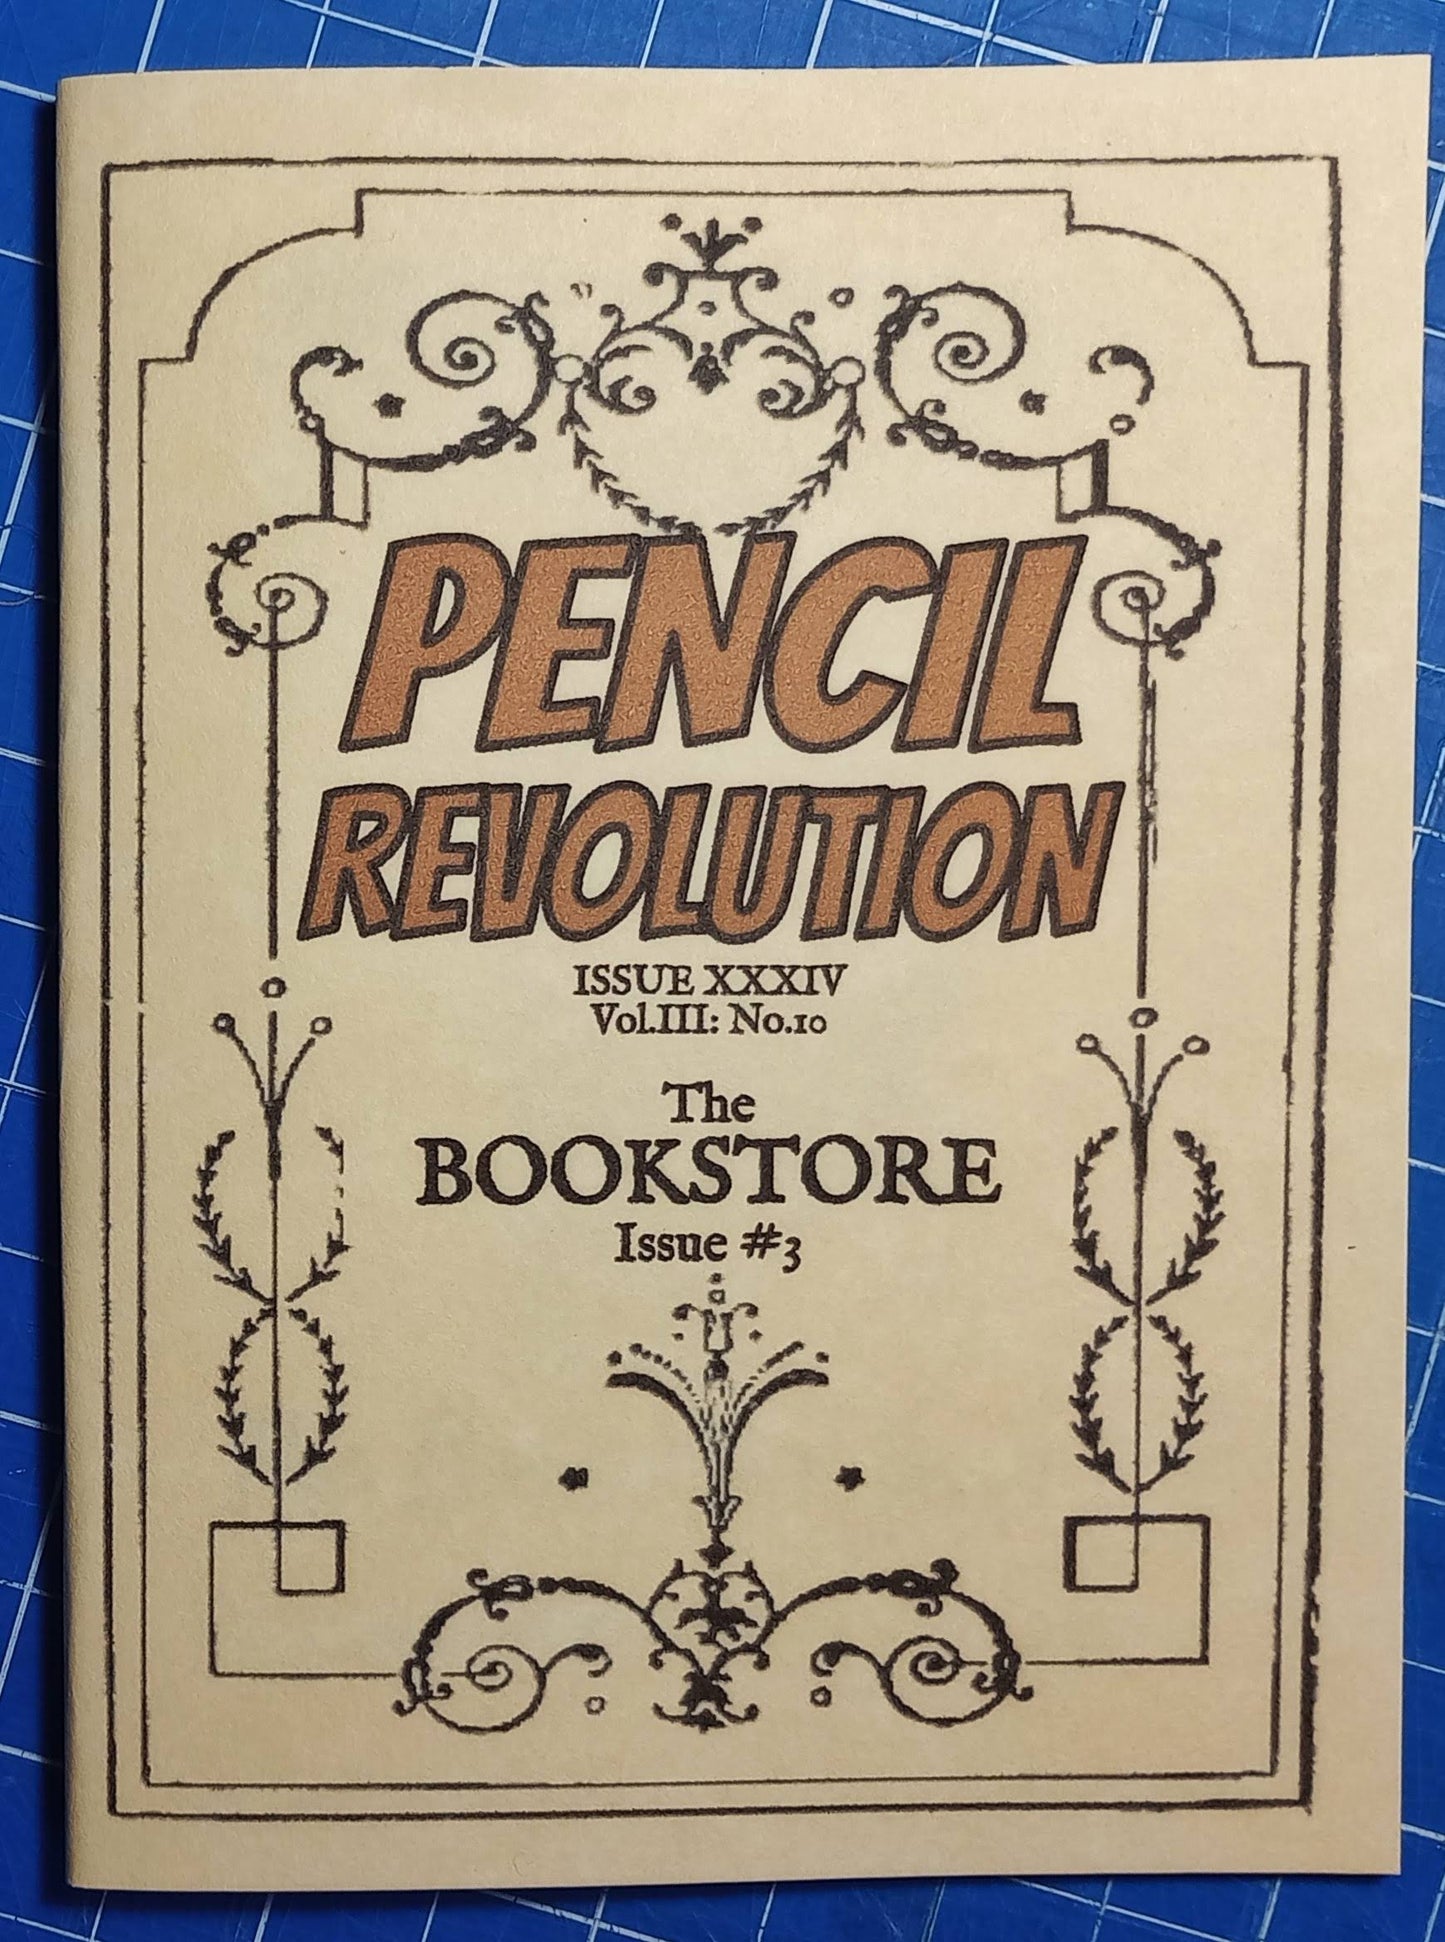 Pencil Revolution Zine No. 34: The Bookstore Issue #3